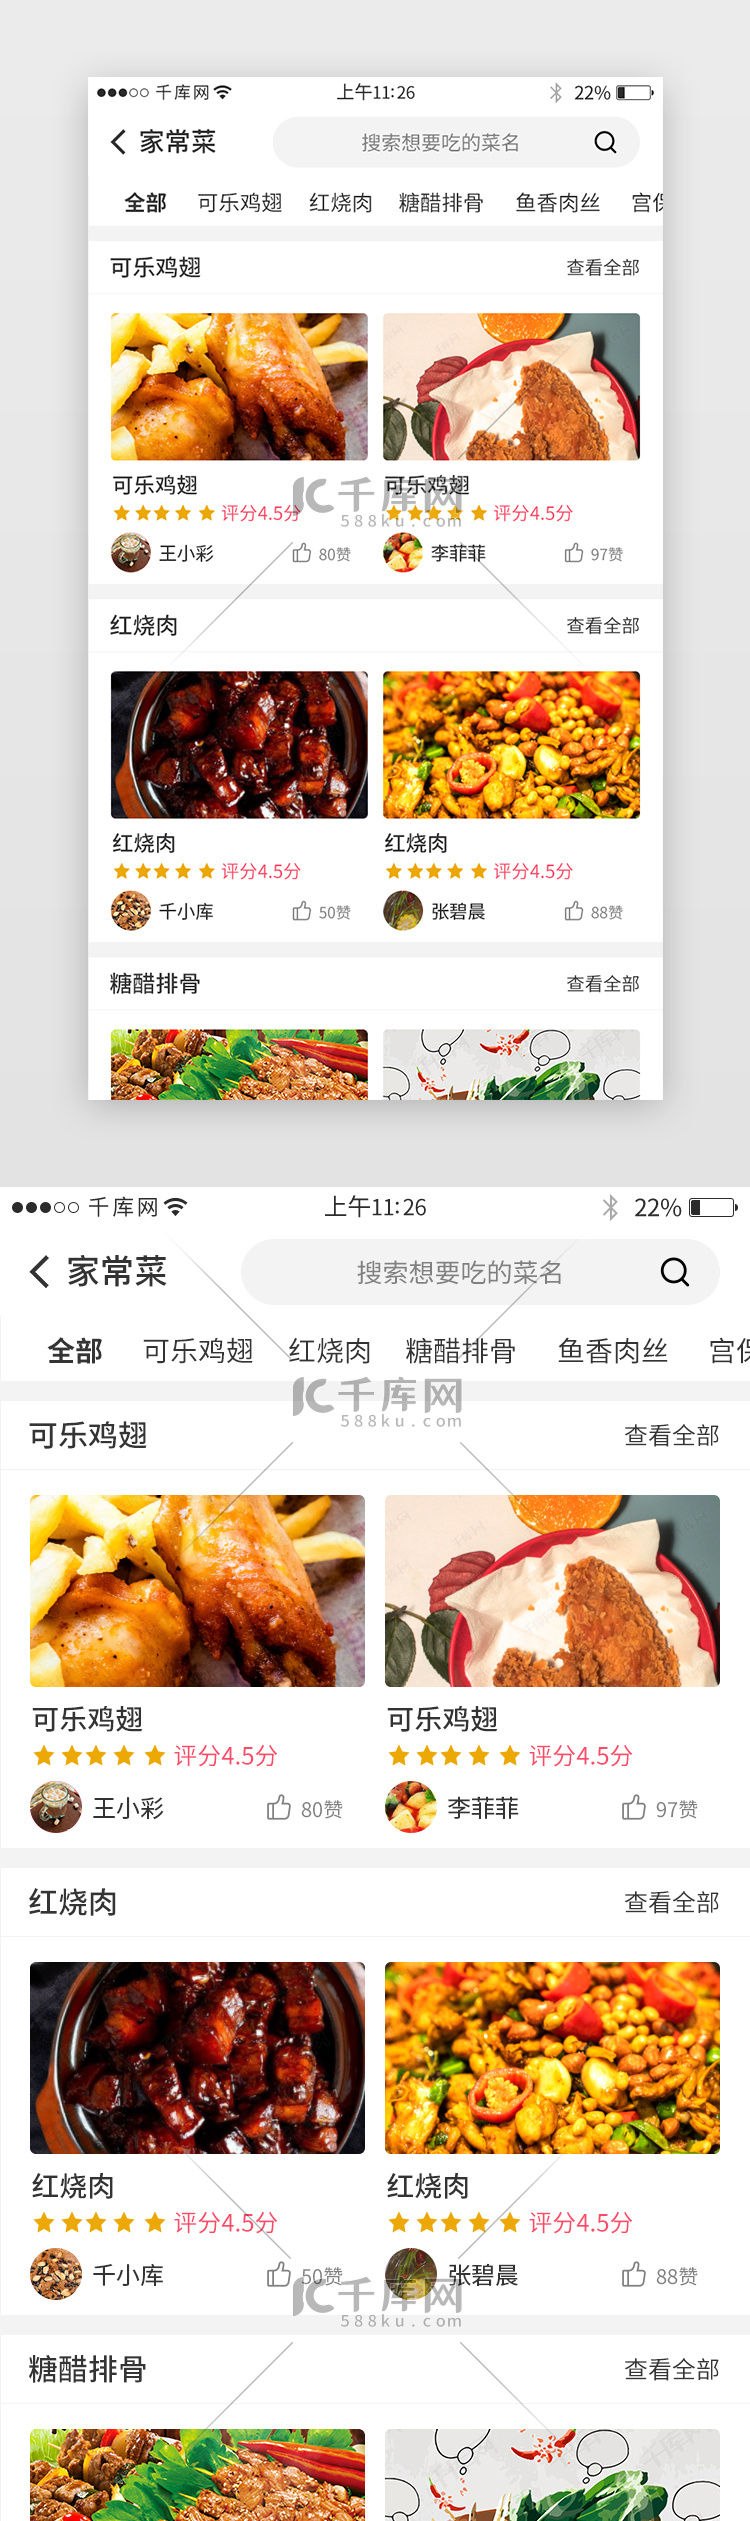 美食app界面设计